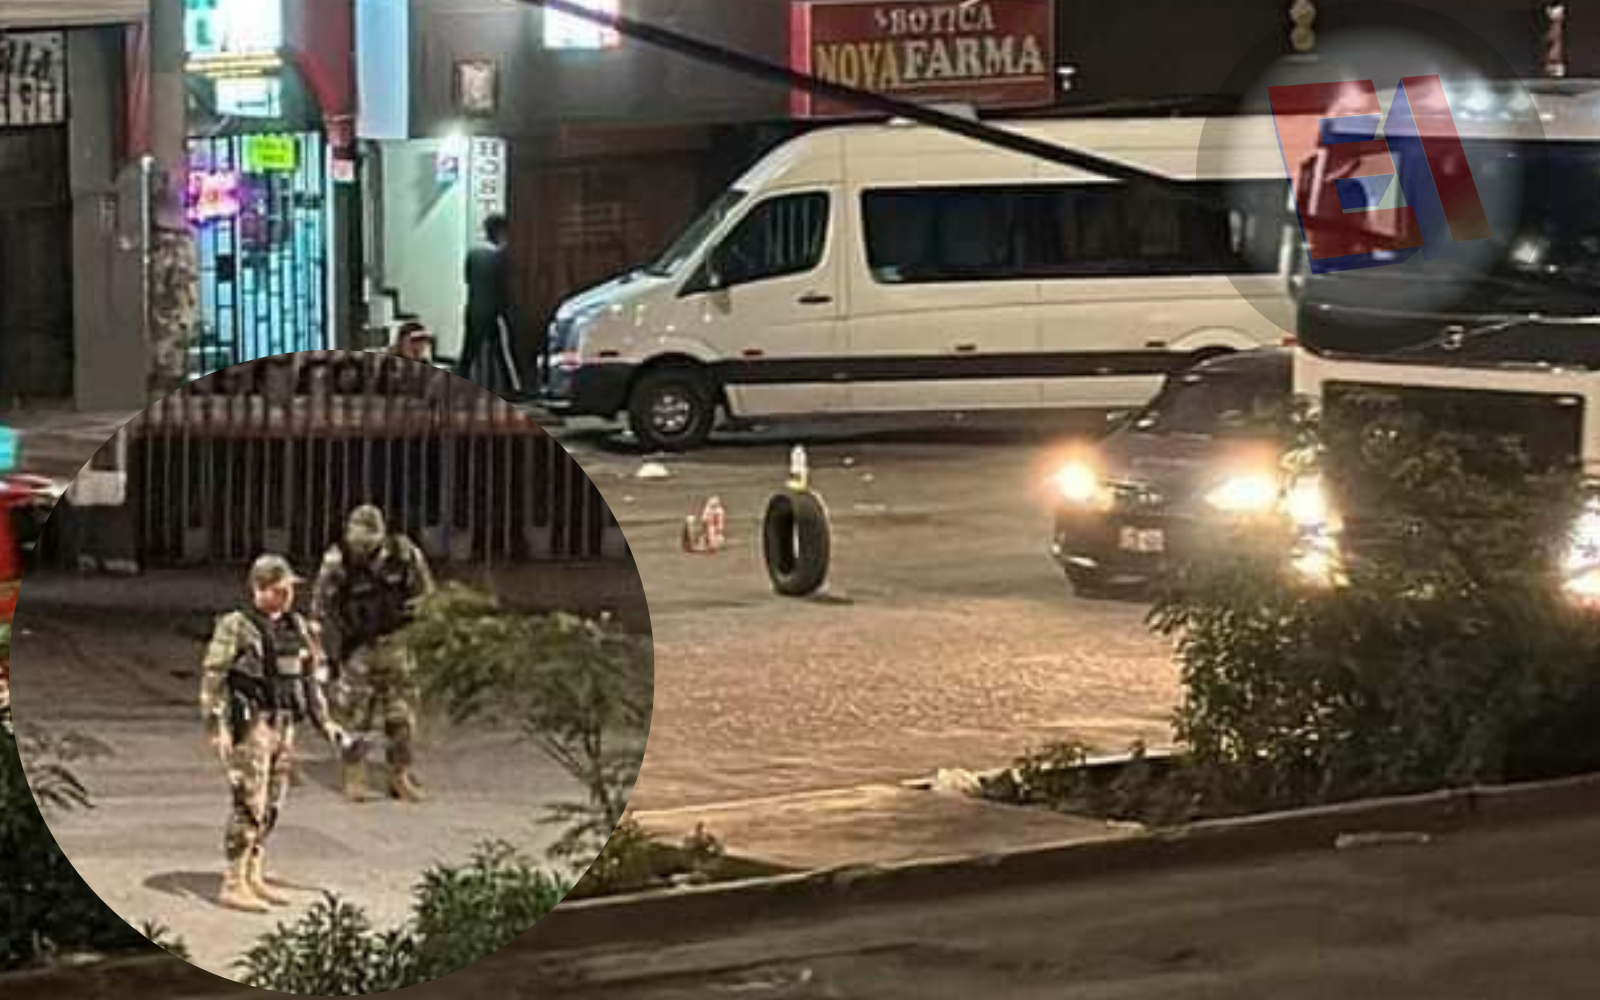 URGENTE. Balacera se registró esta noche frente a Gratersa por el terminal terrestre de Arequipa